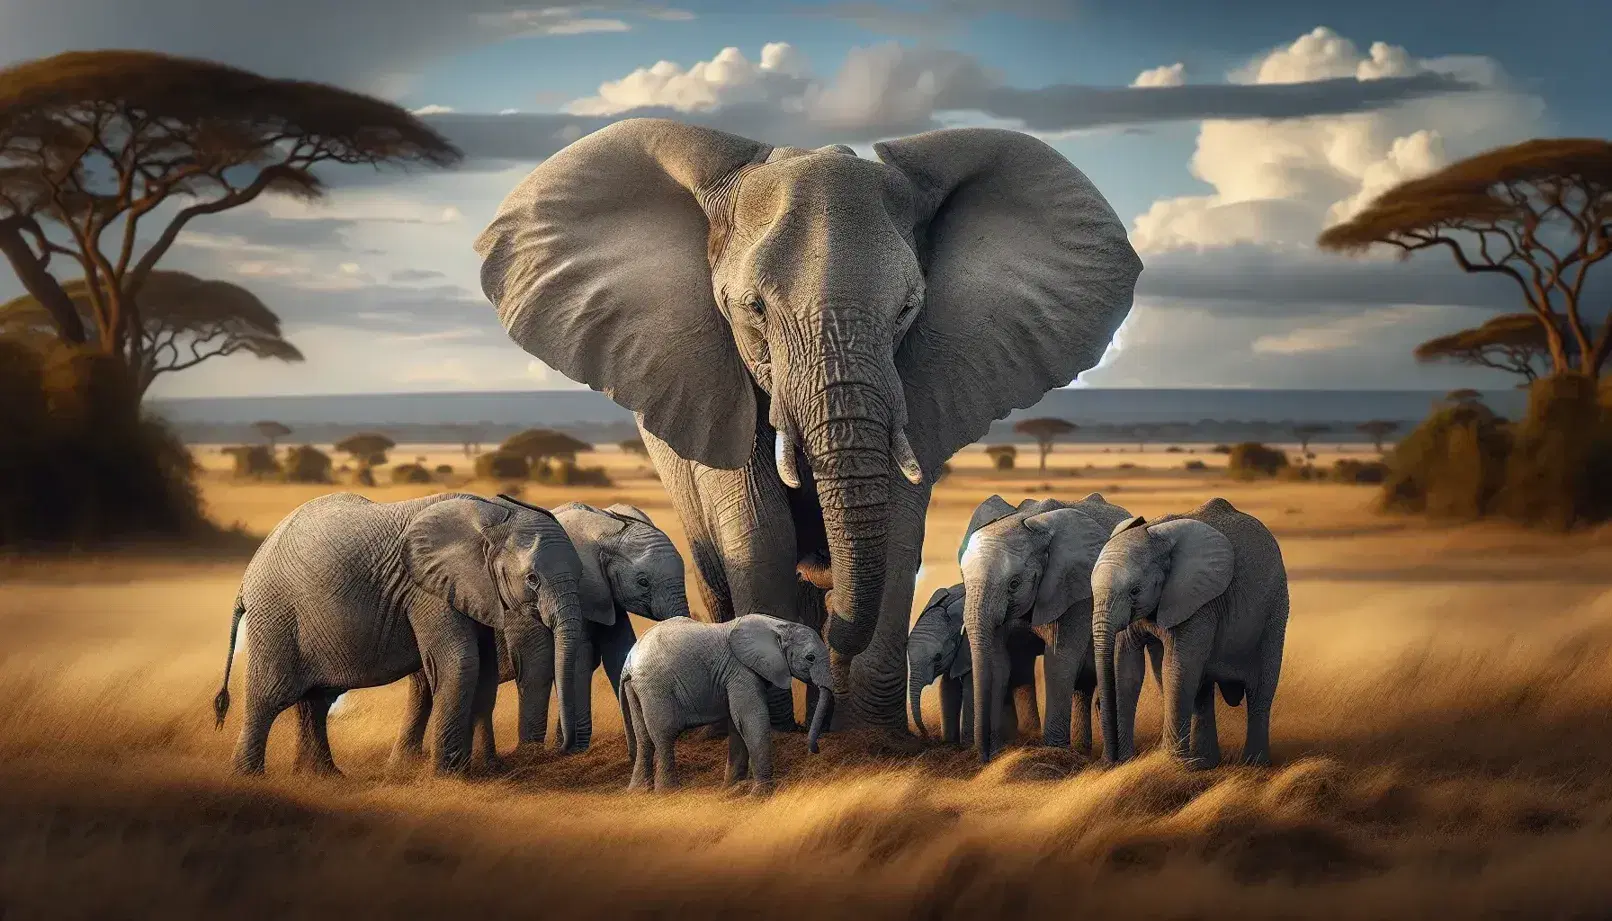 Manada de elefantes africanos en la sabana, con un adulto grande y jóvenes interactuando entre sí, bajo un cielo azul con nubes y árboles dispersos.